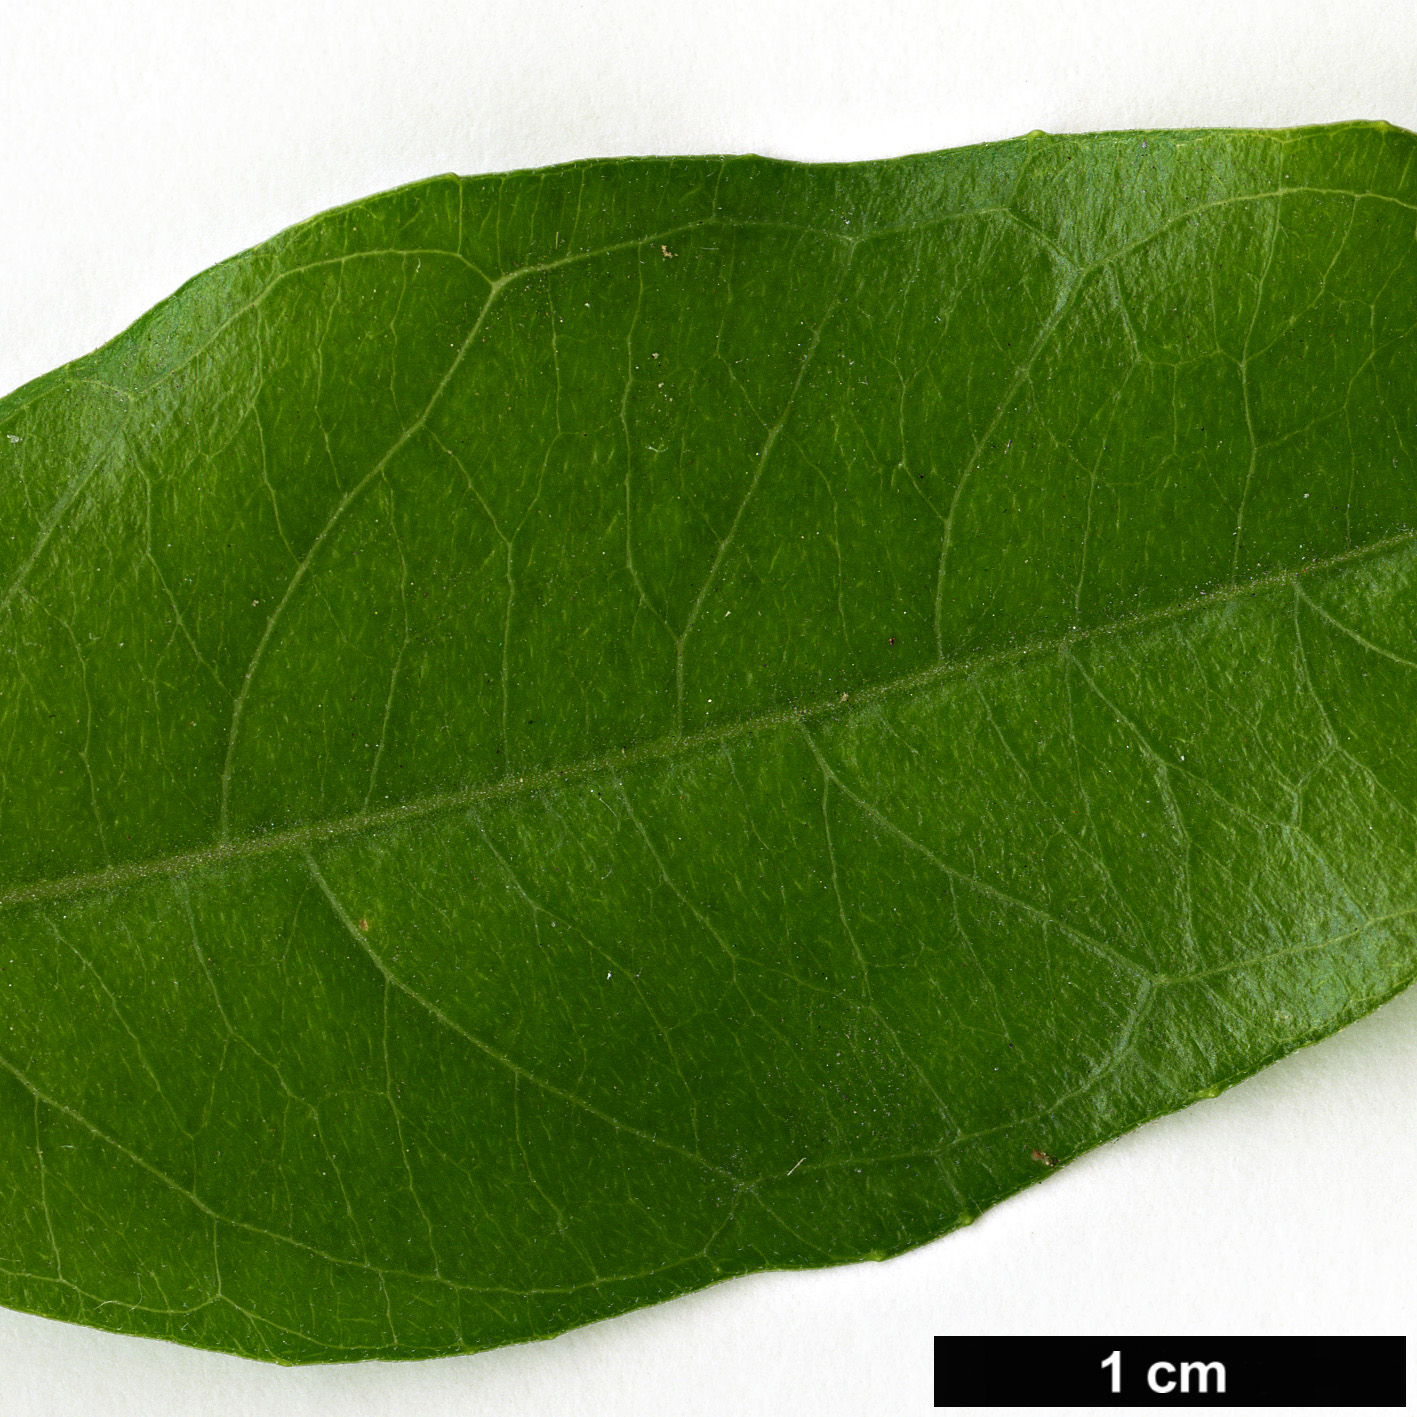 High resolution image: Family: Onagraceae - Genus: Fuchsia - Taxon: regia - SpeciesSub: subsp. serrae